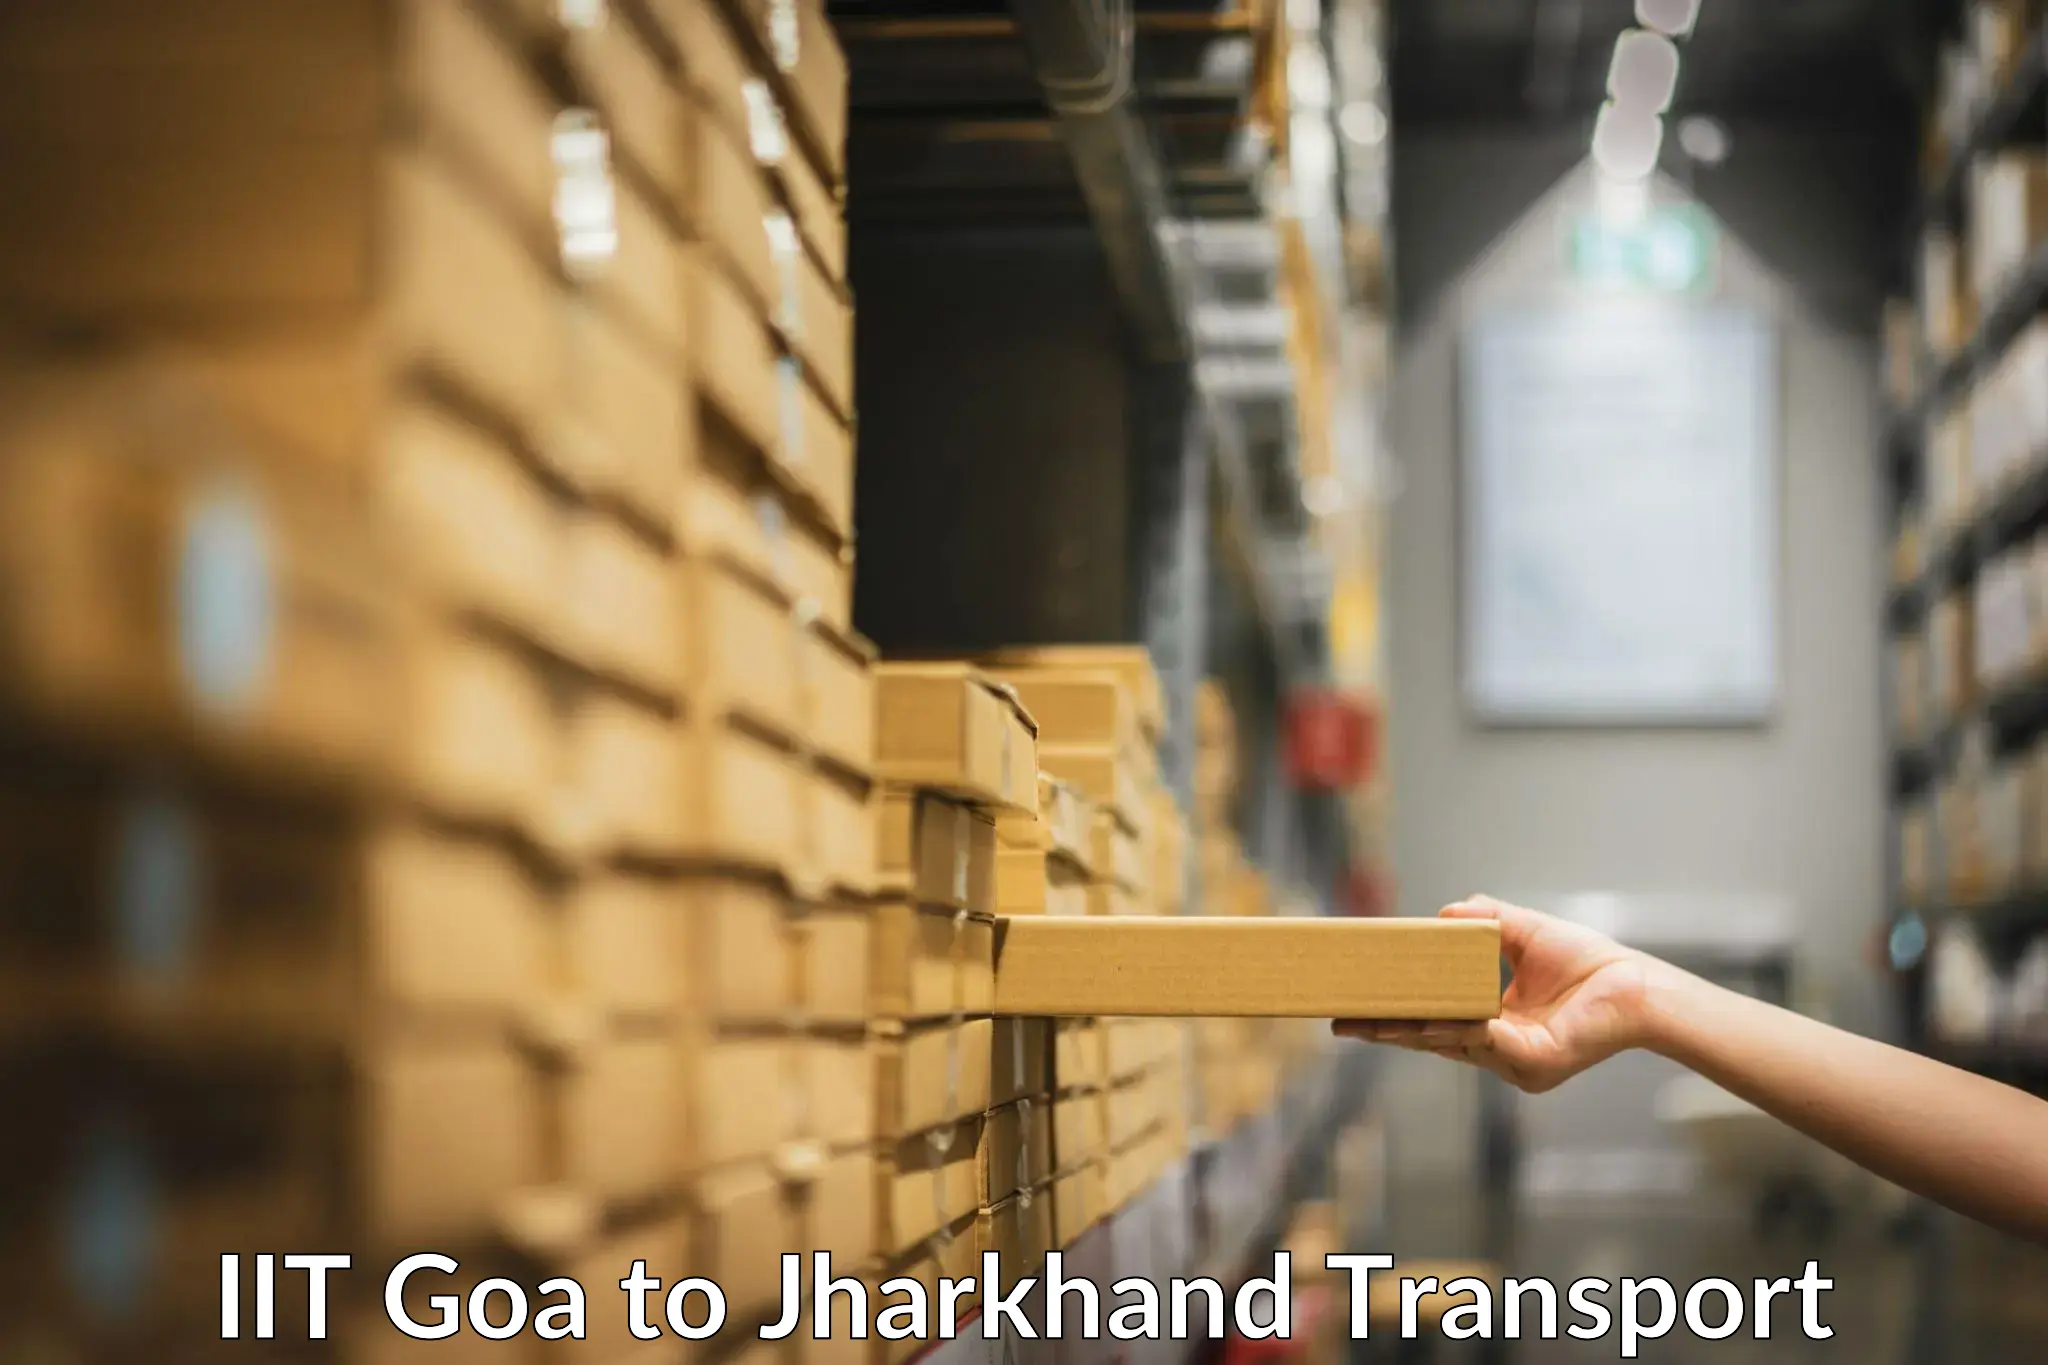 Online transport service IIT Goa to Koderma